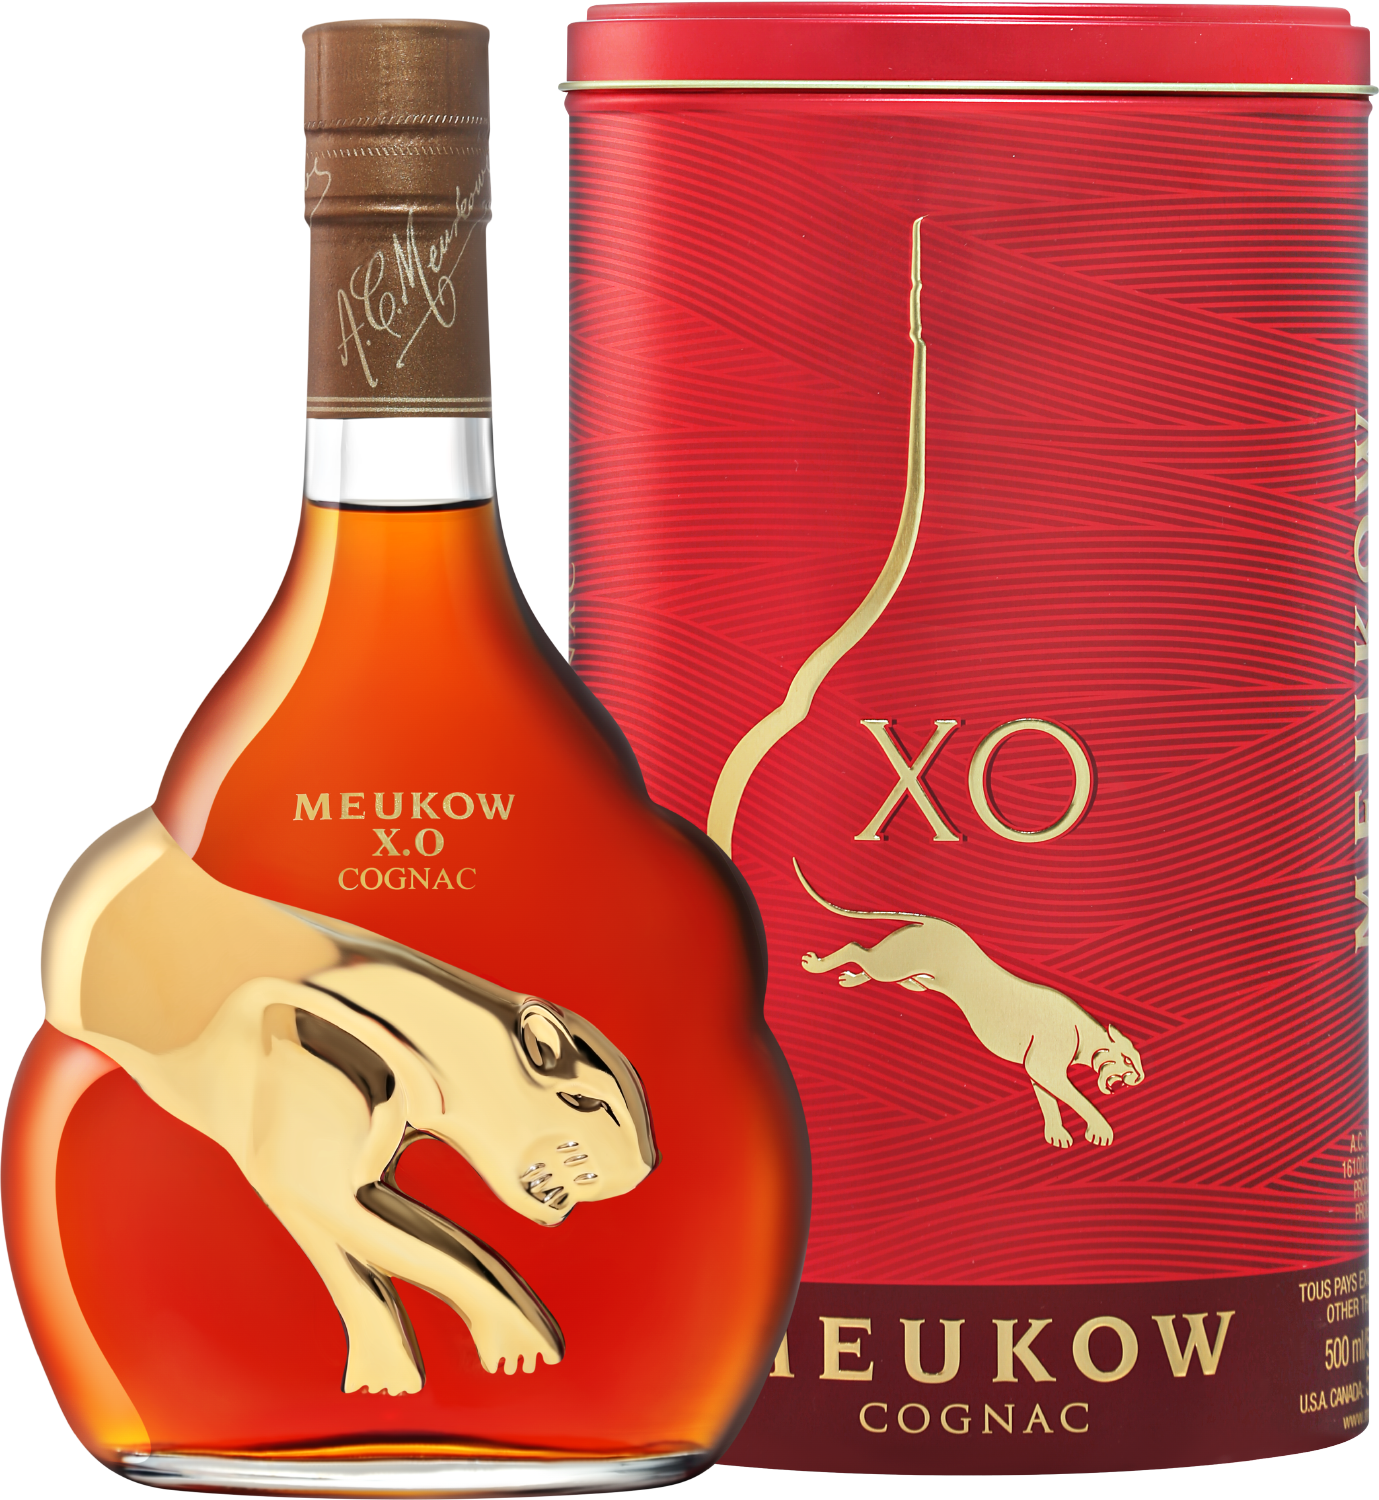 tigranakert xo gift box Meukow Cognac XO (gift box)